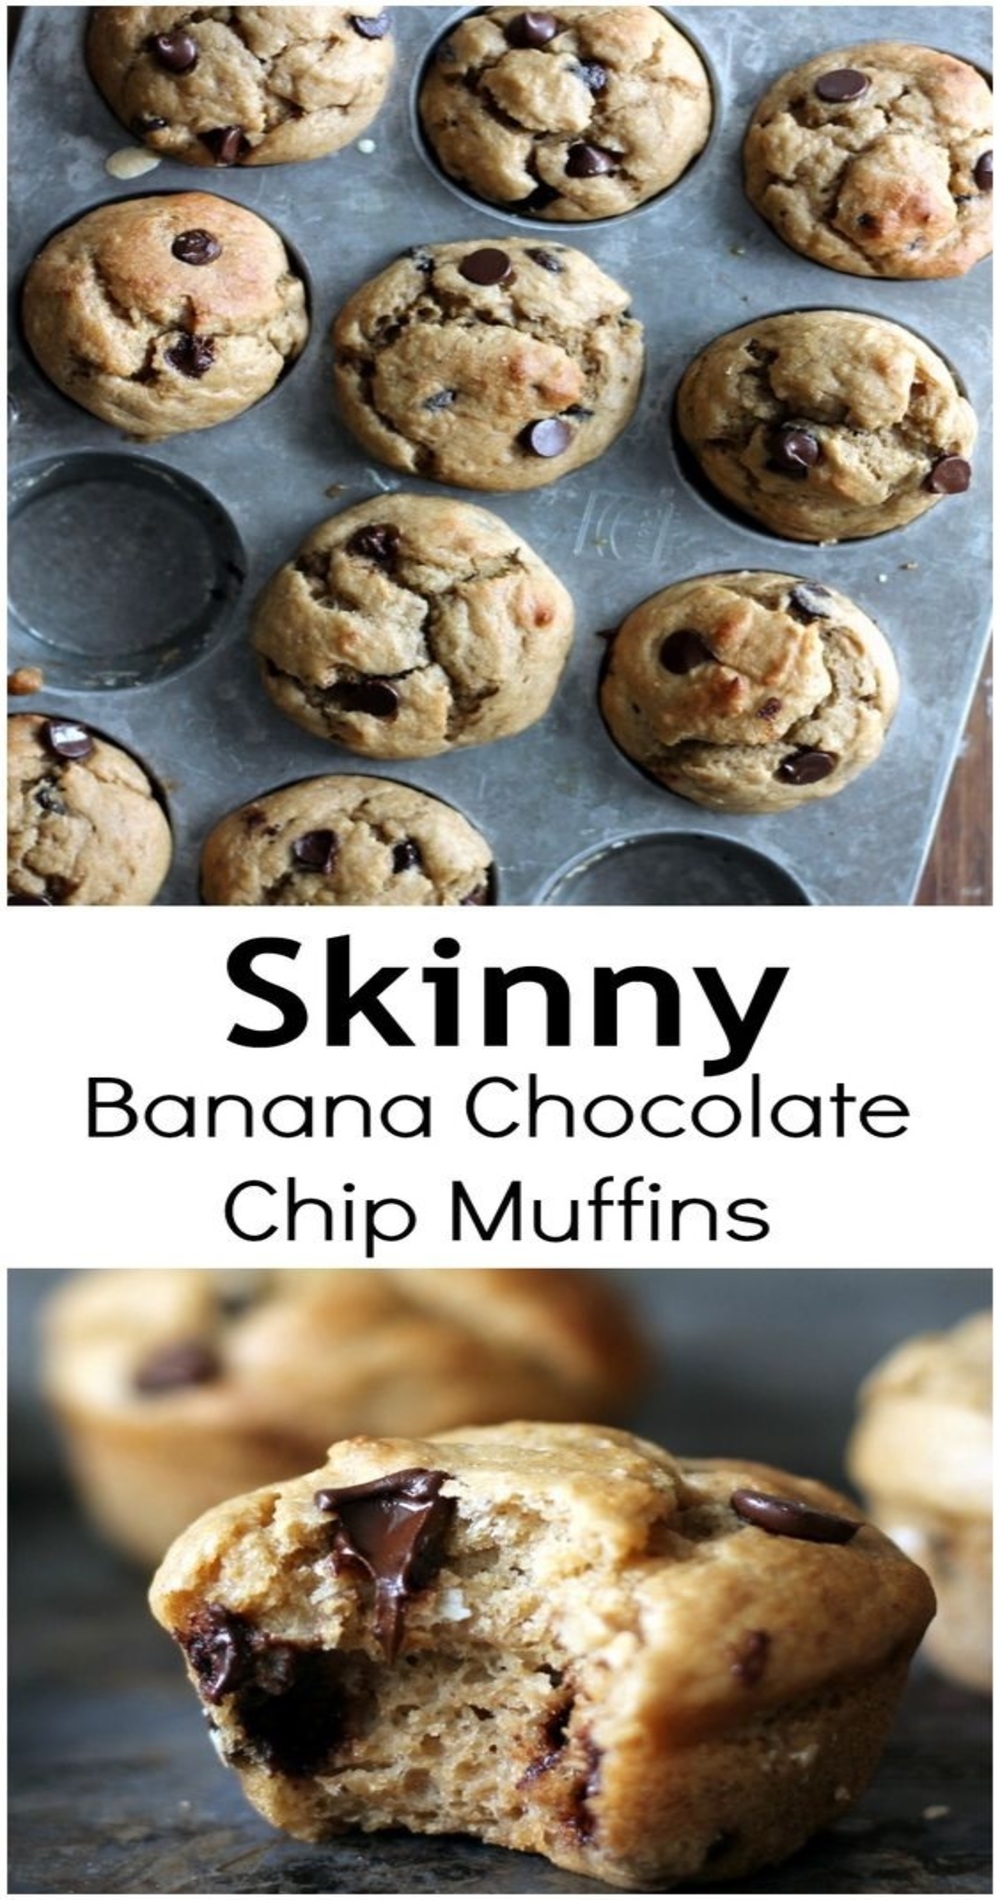 30 minute Skinny Banana Chocolate Chip Muffins